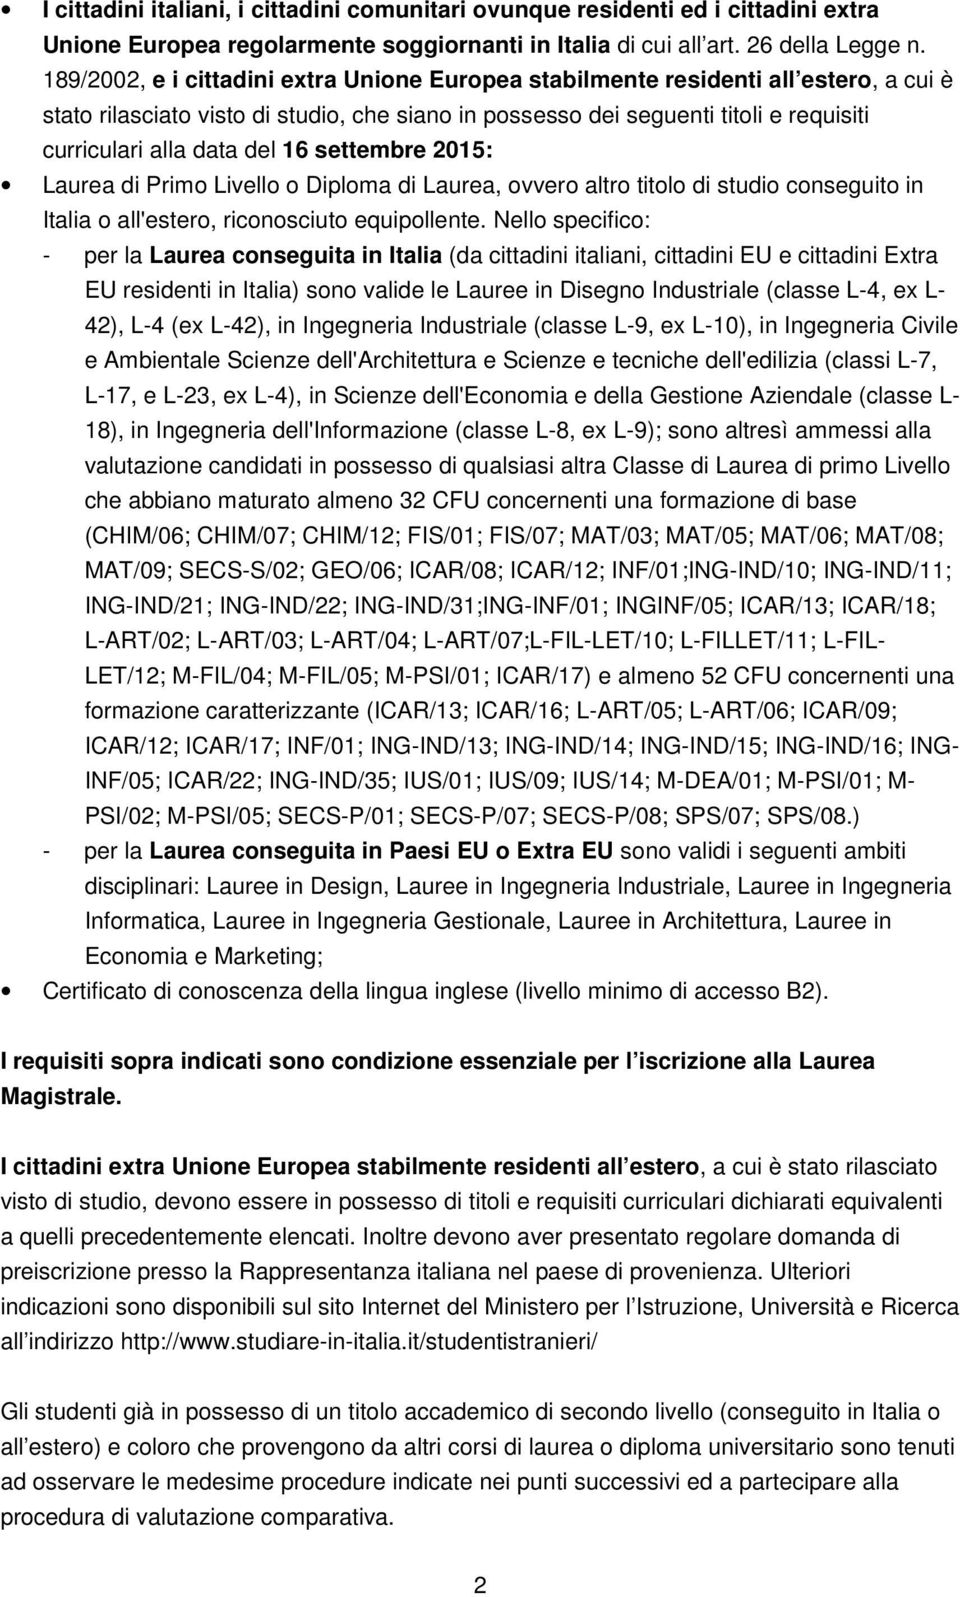 del 16 settembre 2015: Laurea di Primo Livello o Diploma di Laurea, ovvero altro titolo di studio conseguito in Italia o all'estero, riconosciuto equipollente.